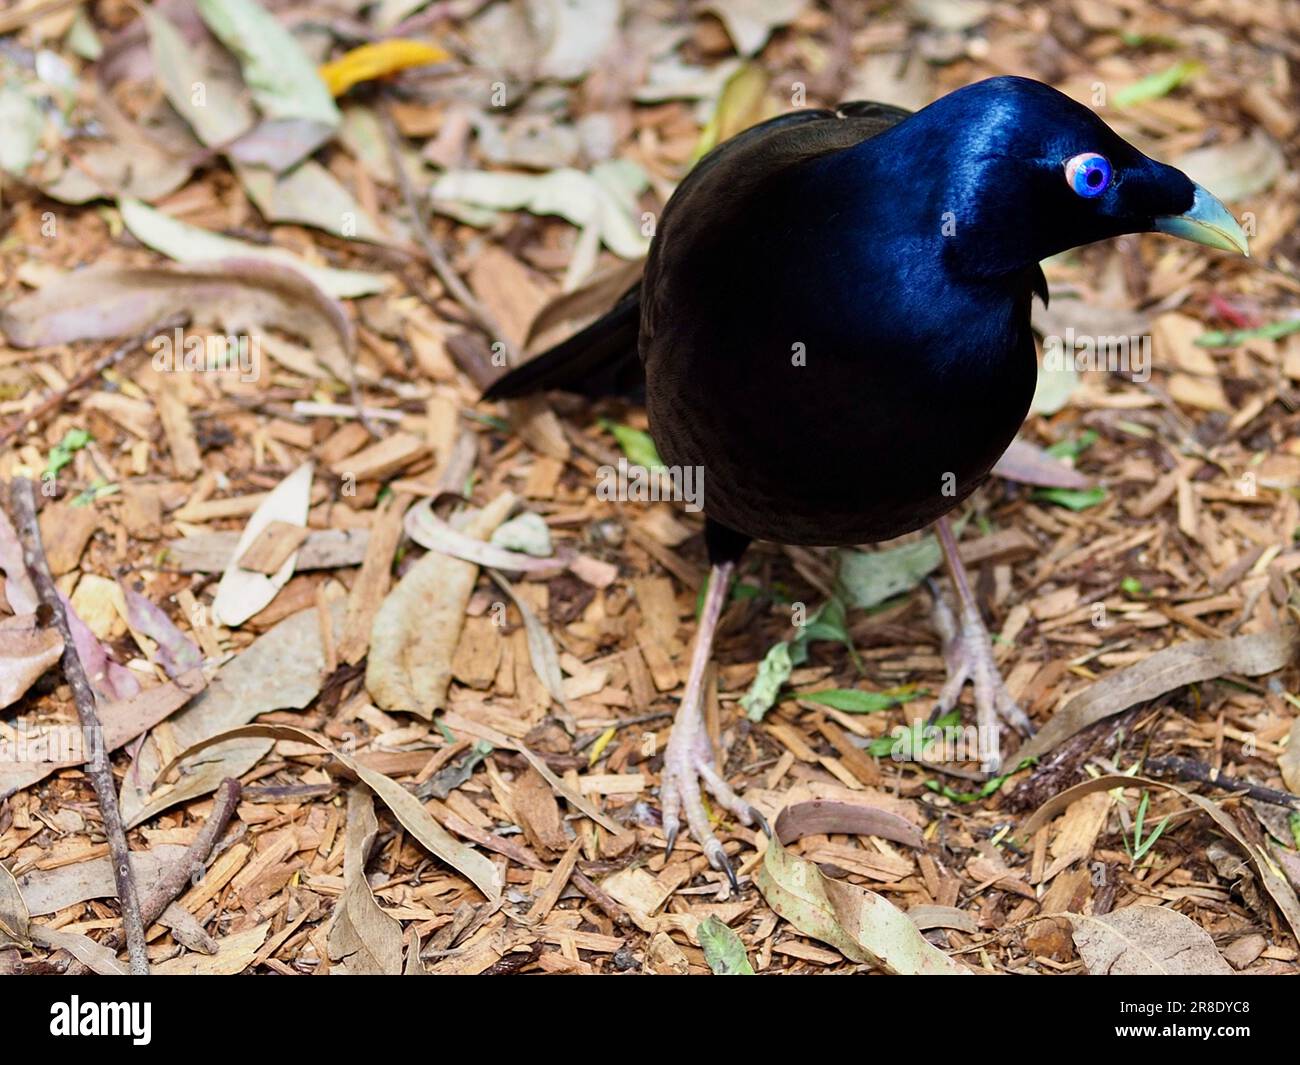 Herrlicher, glitzernder männlicher Satin-Bowerbird mit bemerkenswerten Augen und auffälligem Gefieder. Stockfoto